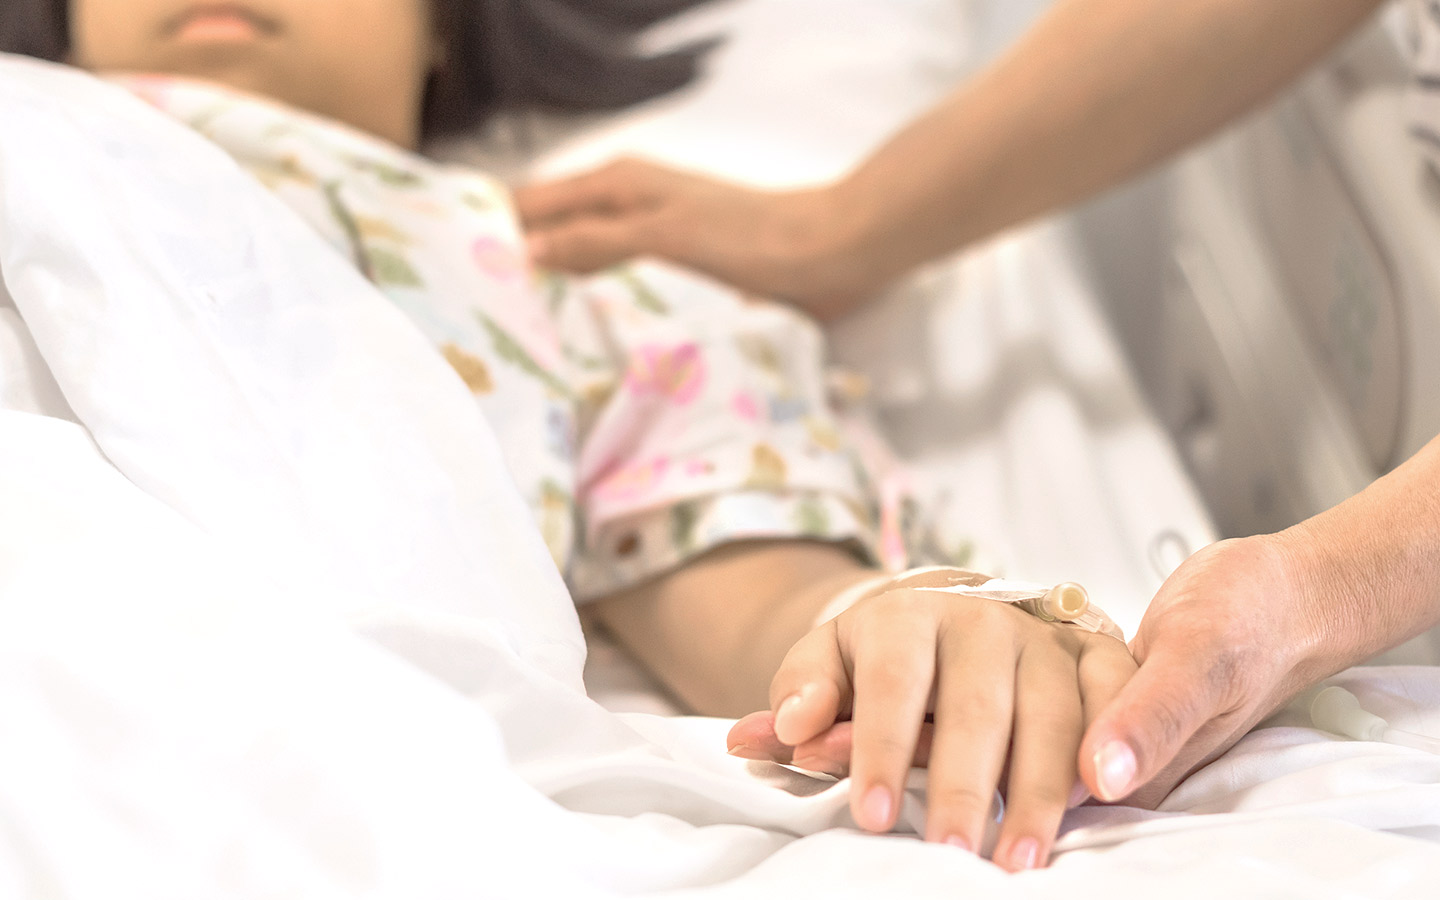 Foto: todkrankes Mädchen liegt im Krankenhausbett, Erwachsene hält ihre Hand.